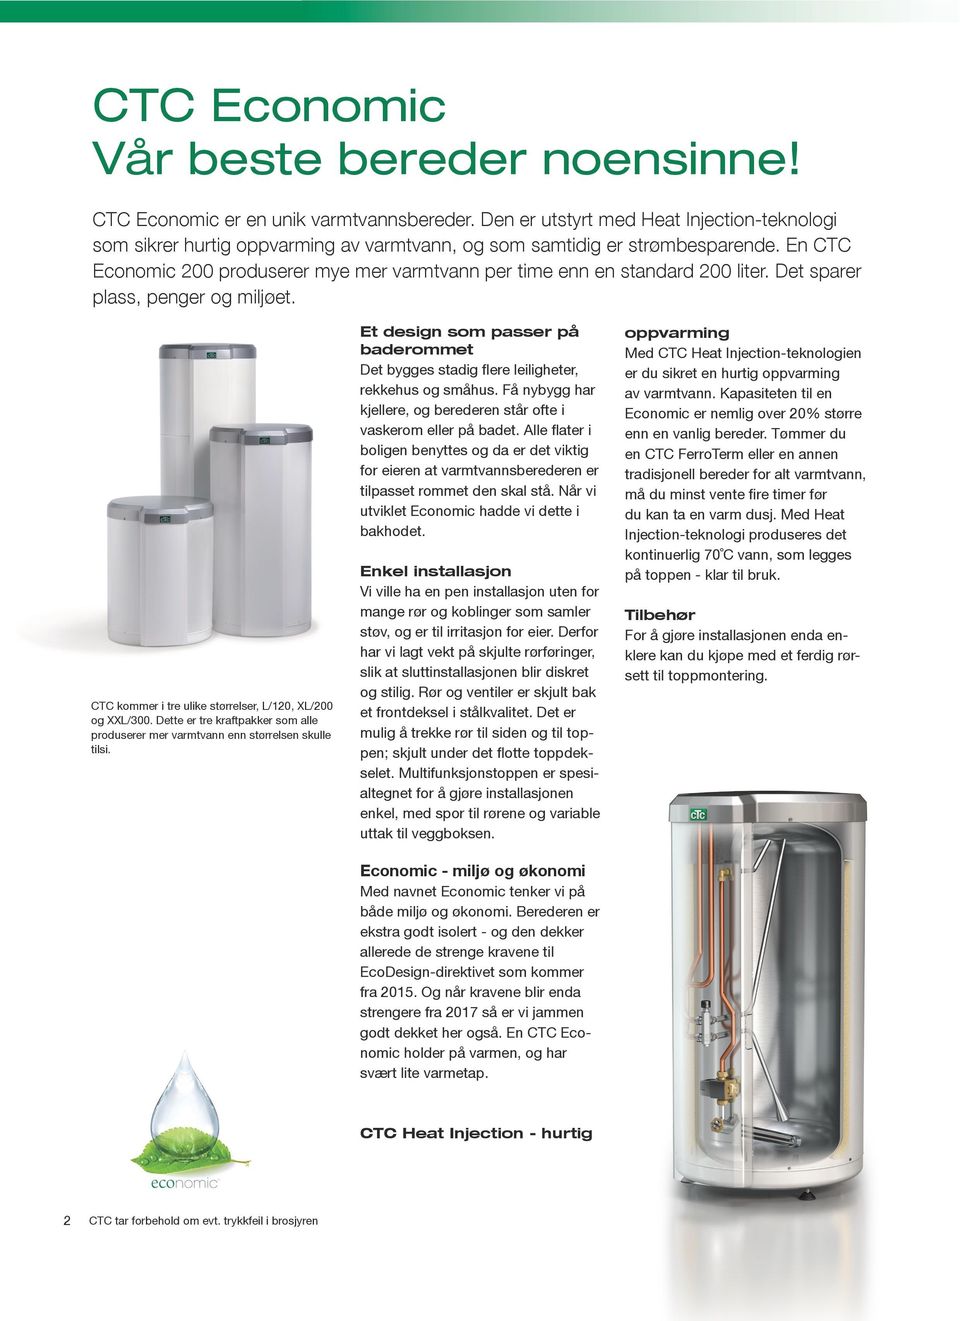 En CTC Economic 200 produserer mye mer varmtvann per time enn en standard 200 liter. Det sparer plass, penger og miljøet. CTC kommer i tre ulike størrelser, L/20, XL/200 og XXL/300.